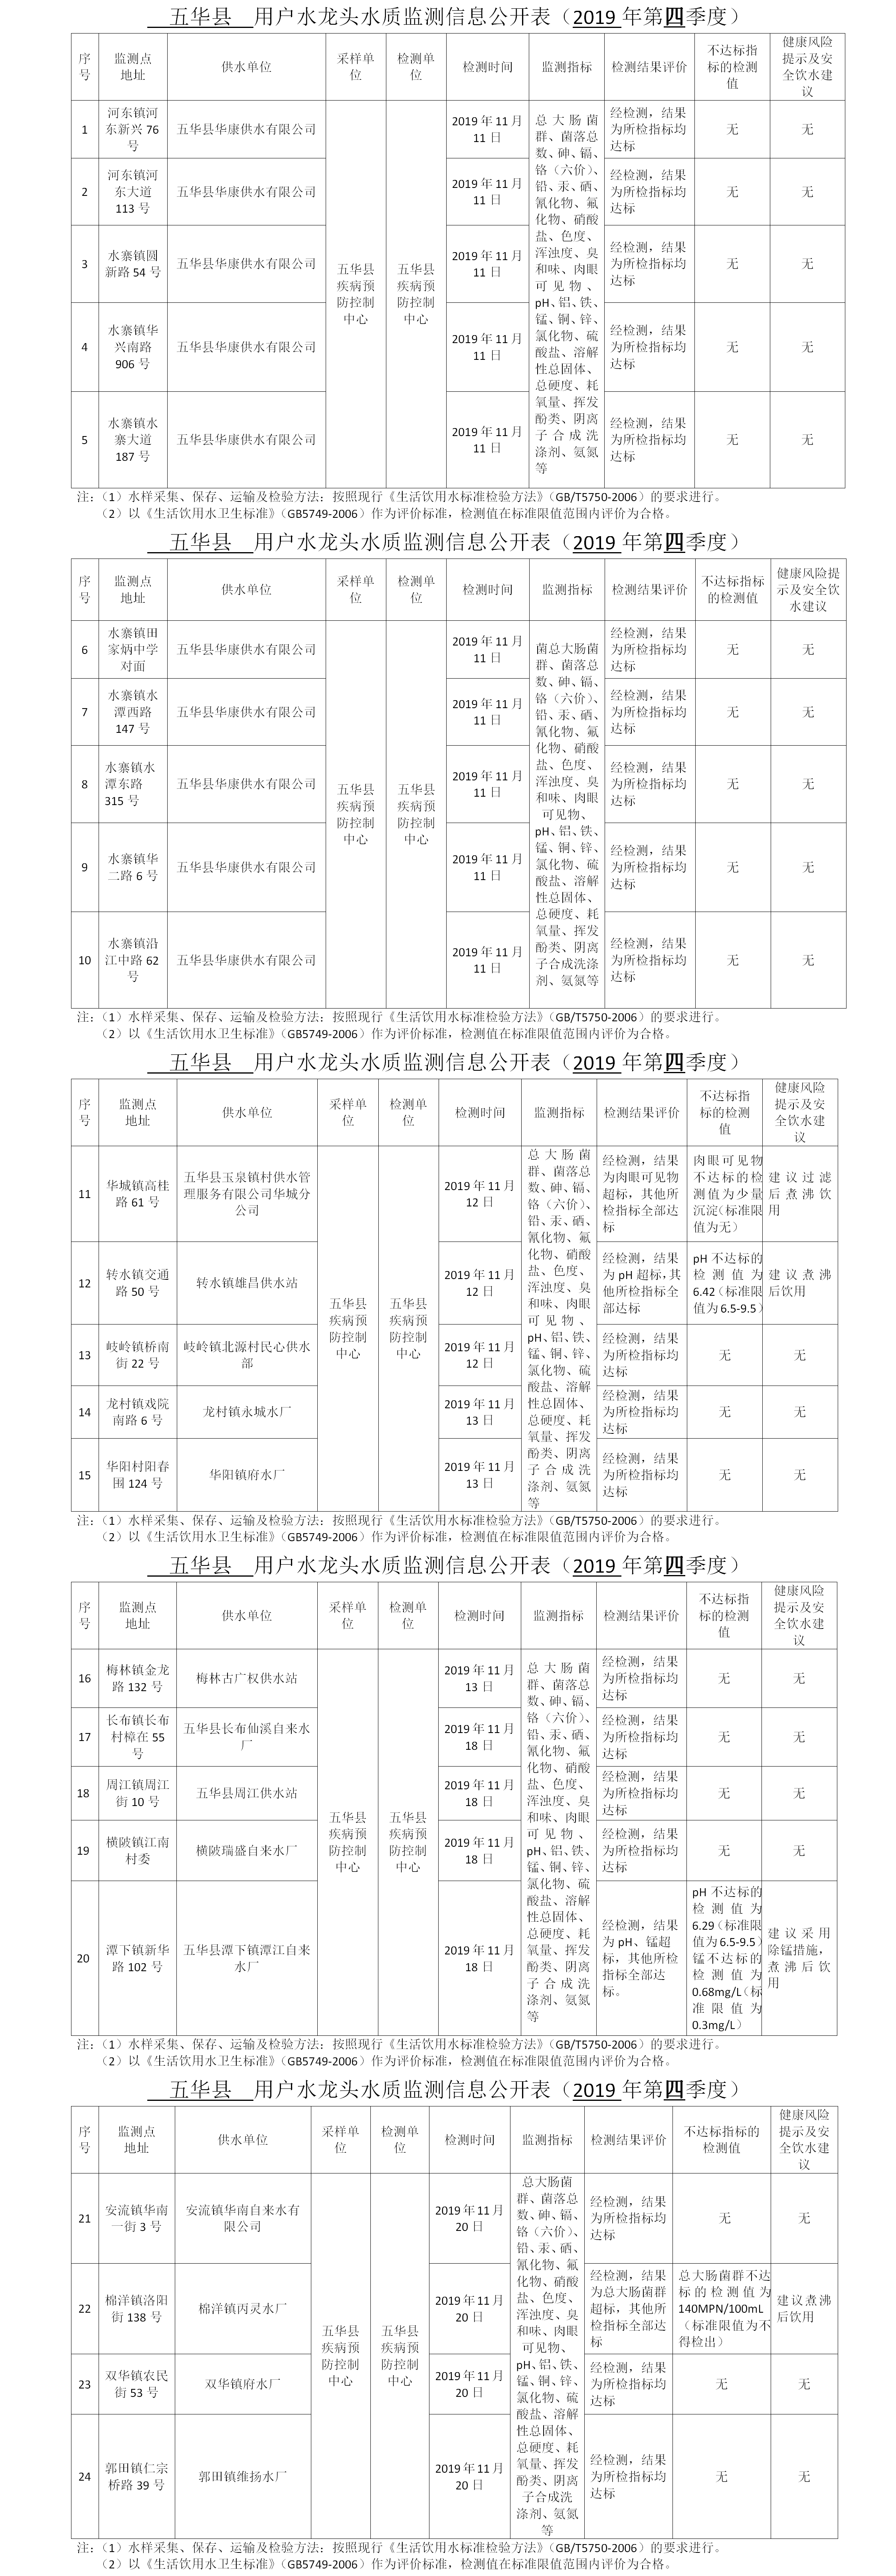 2019年第4季度五华县24个水龙头信息公开表.png